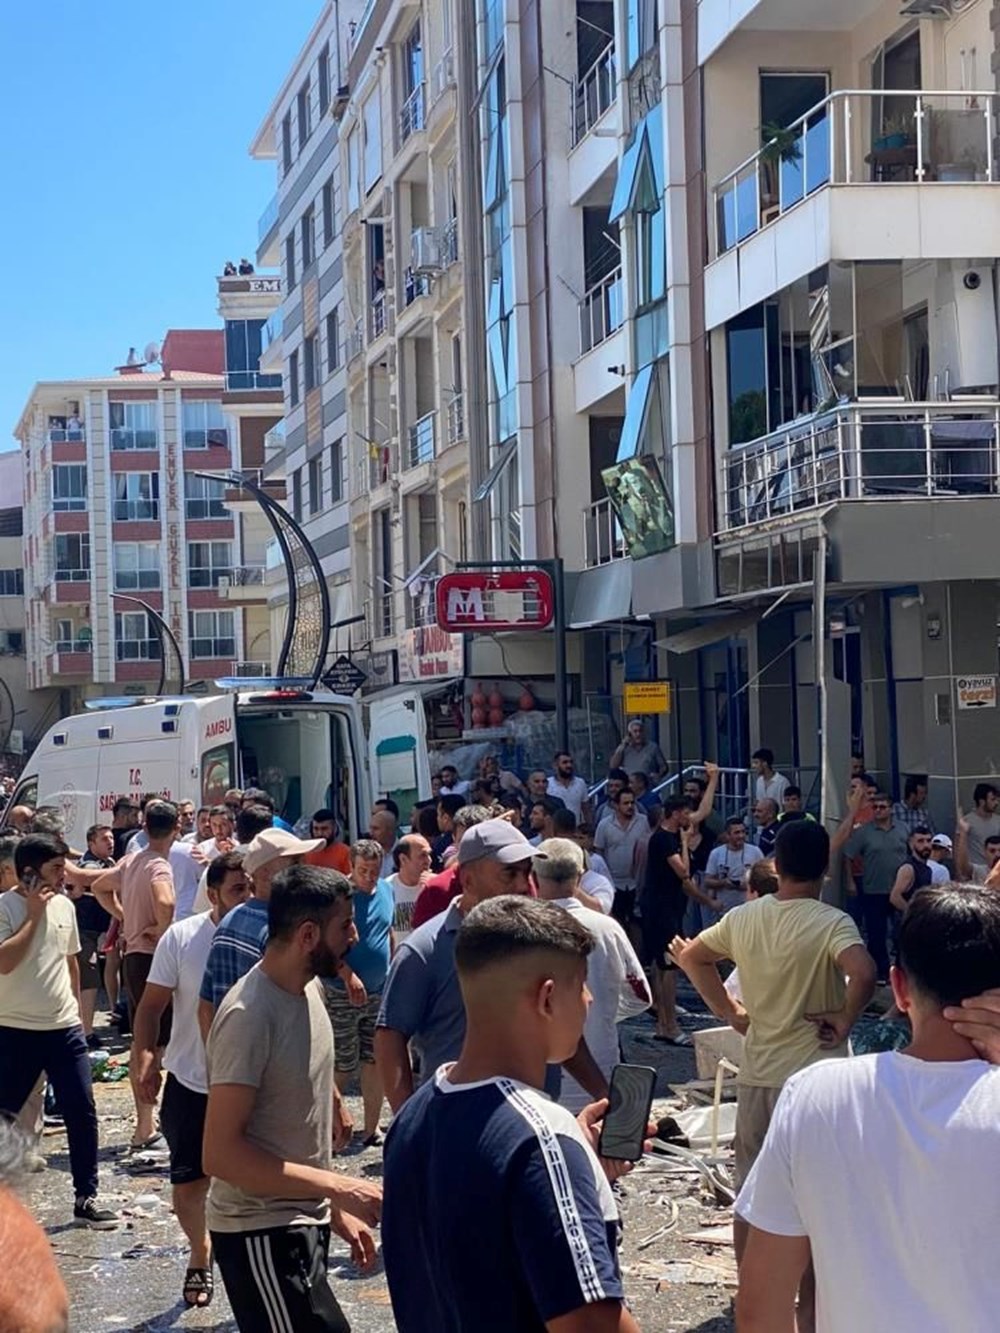 SON DAKİKA HABERİ | İzmir Torbalı'da bir binada doğalgaz patlaması: 4 ölü, 20 yaralı - 17